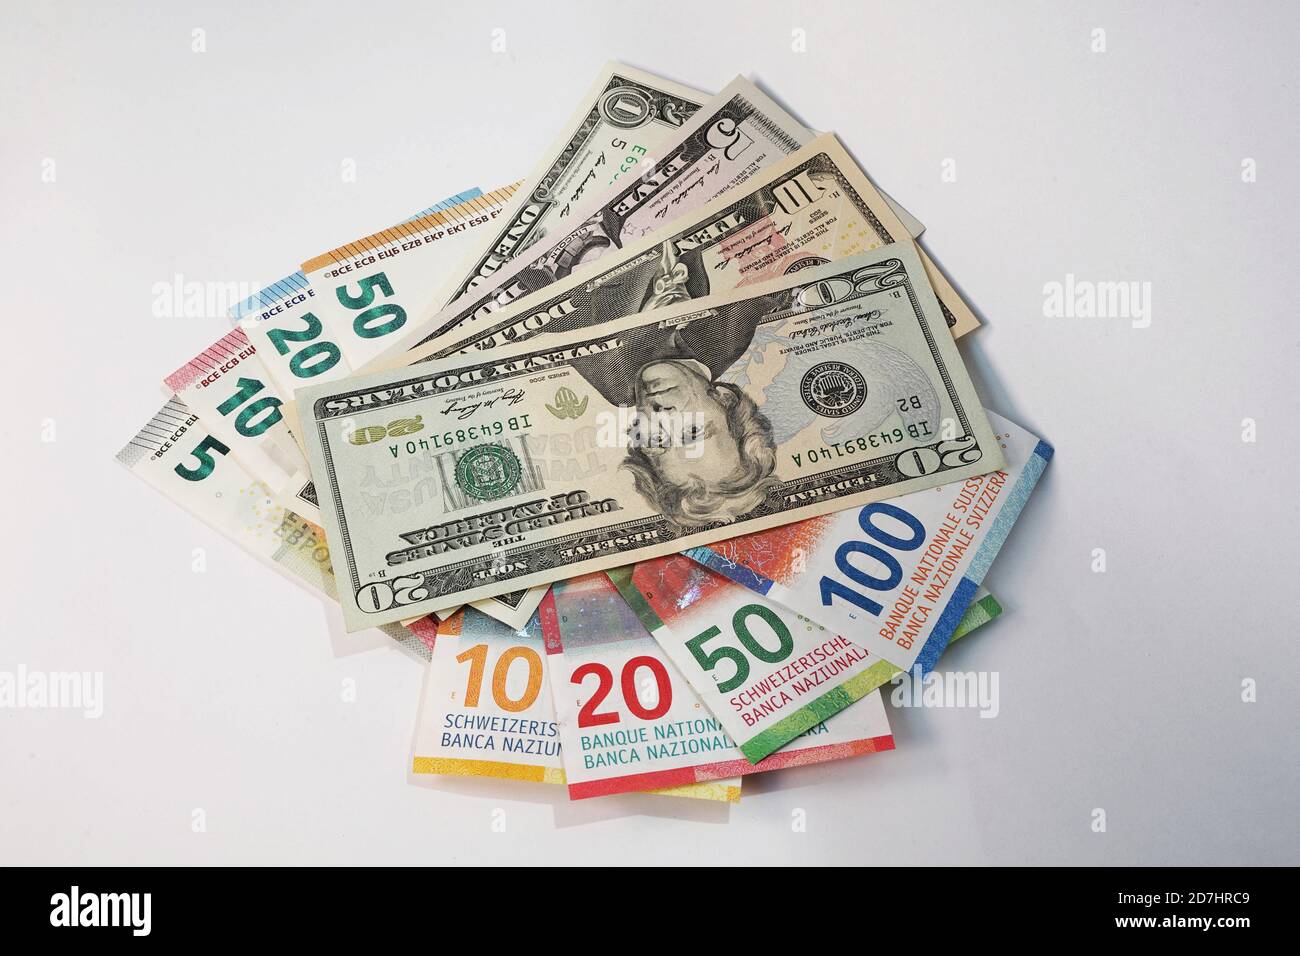 Geld aus der Schweiz, Europa und den USA - Money from Switzerland, EU and USA - CHF, EURO, USD, Swiss Francs, EURO and US Dollars Stock Photo